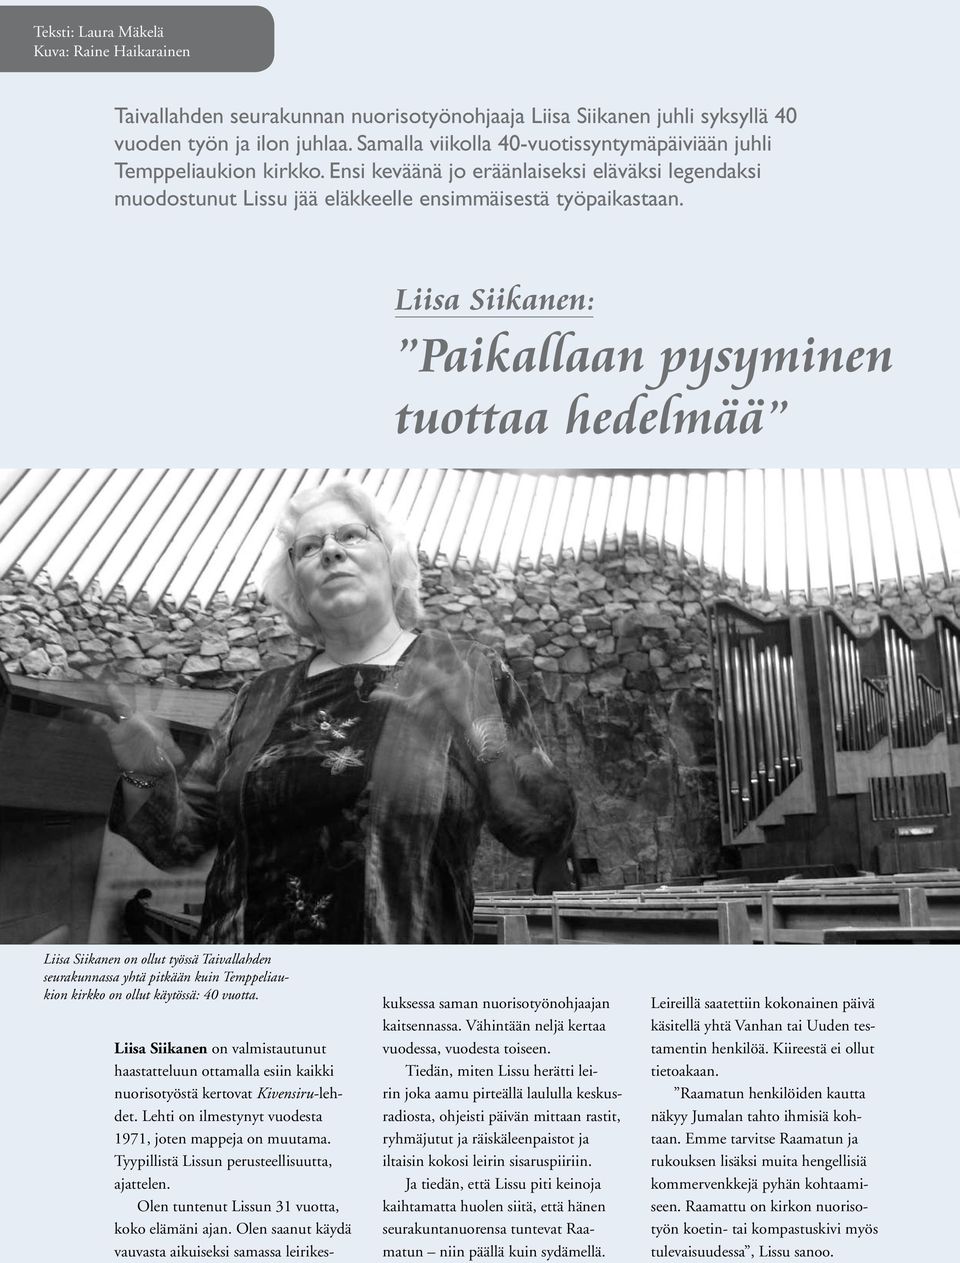 Liisa Siikanen: Paikallaan pysyminen tuottaa hedelmää 14 Liisa Siikanen on ollut työssä Taivallahden seurakunnassa yhtä pitkään kuin Temppeliaukion kirkko on ollut käytössä: 40 vuotta.